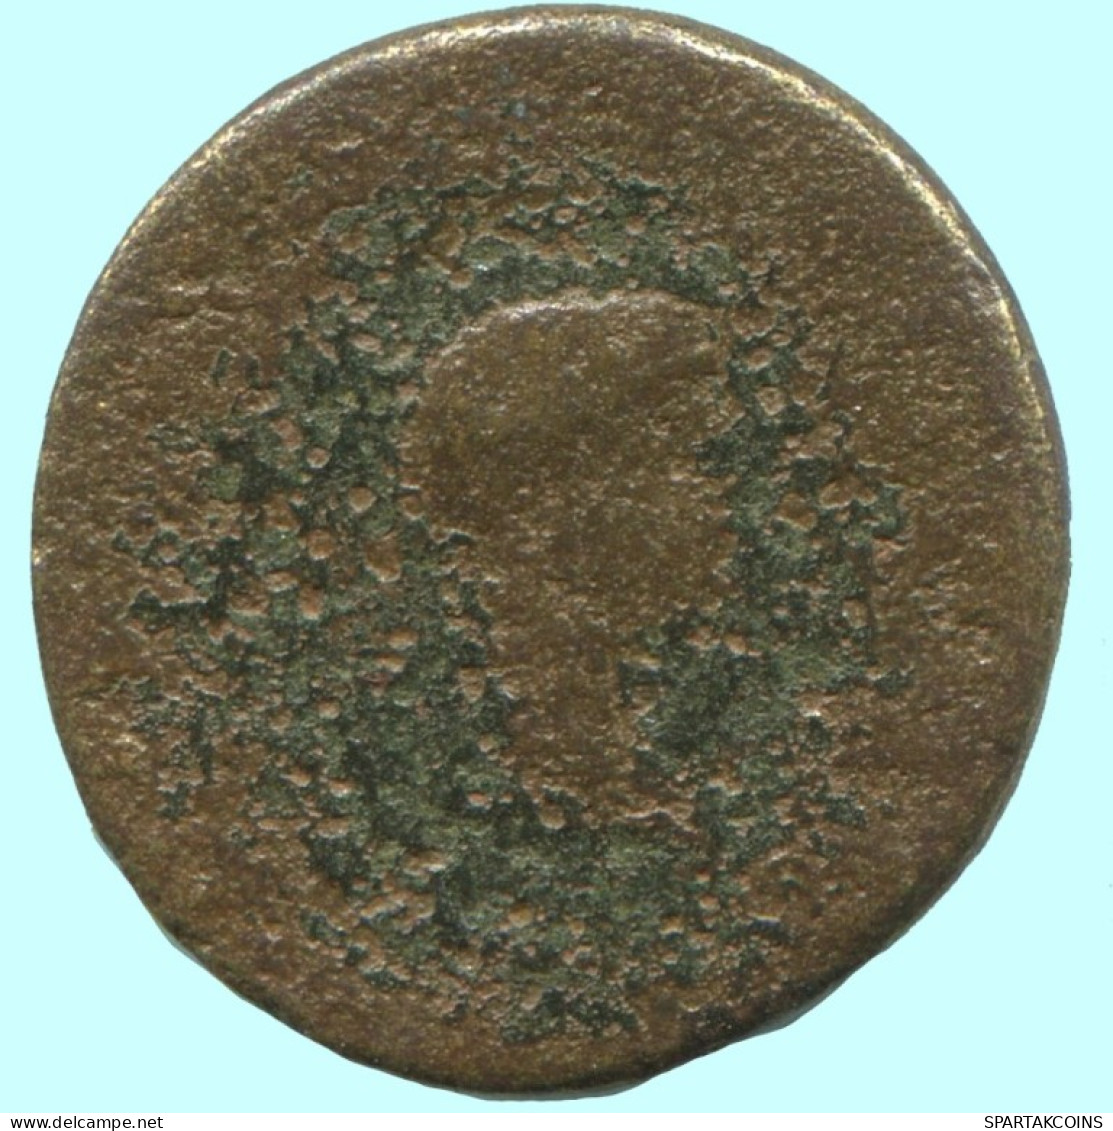 Auténtico ORIGINAL GRIEGO ANTIGUO Moneda 2.4g/17mm #AF943.12.E.A - Greek